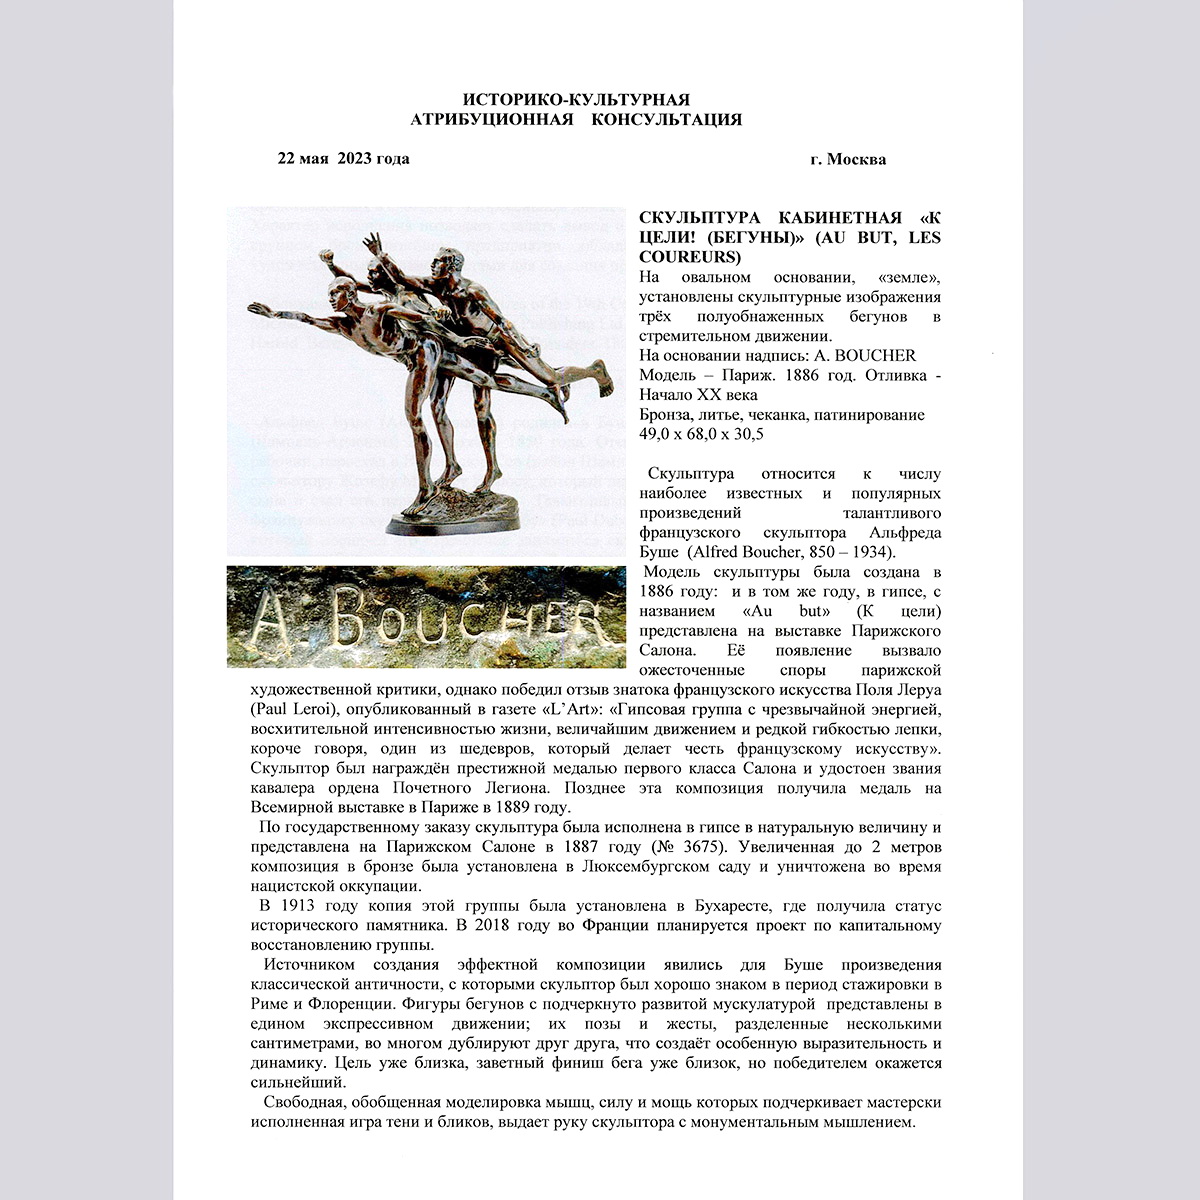 Скульптура «К цели» из бронзы 19-20 вв (A. Boucher, Франция)